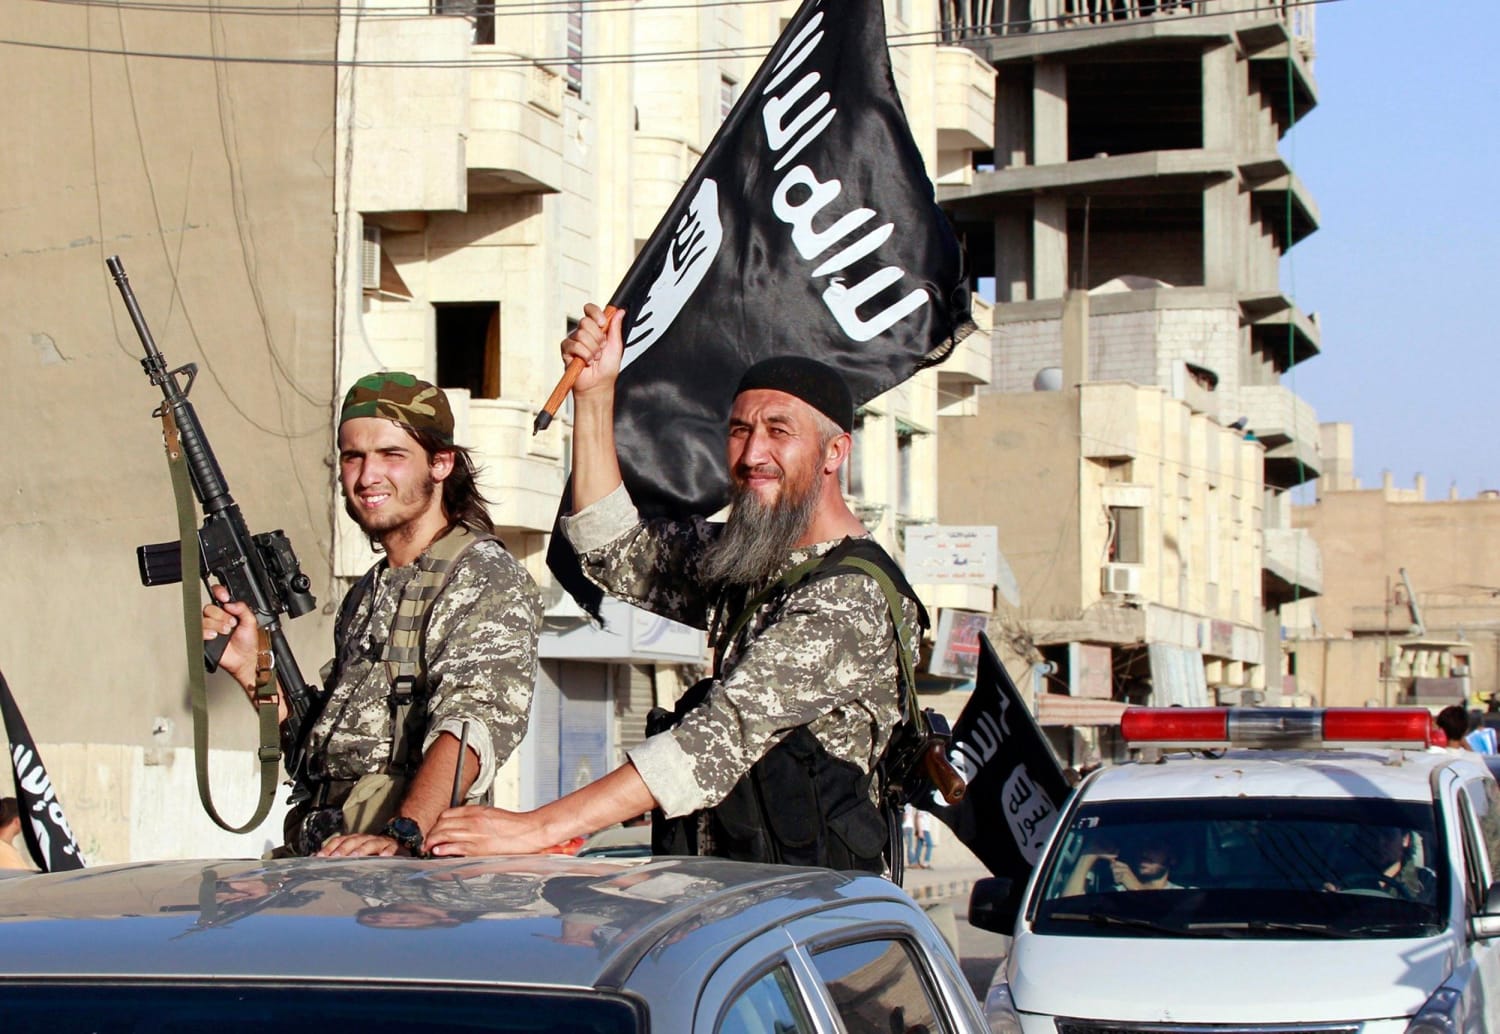 Фото игиловцев. Исламское государство Ирака и Леванта. Террористическая группировка «Исламское государство» в Сирии.